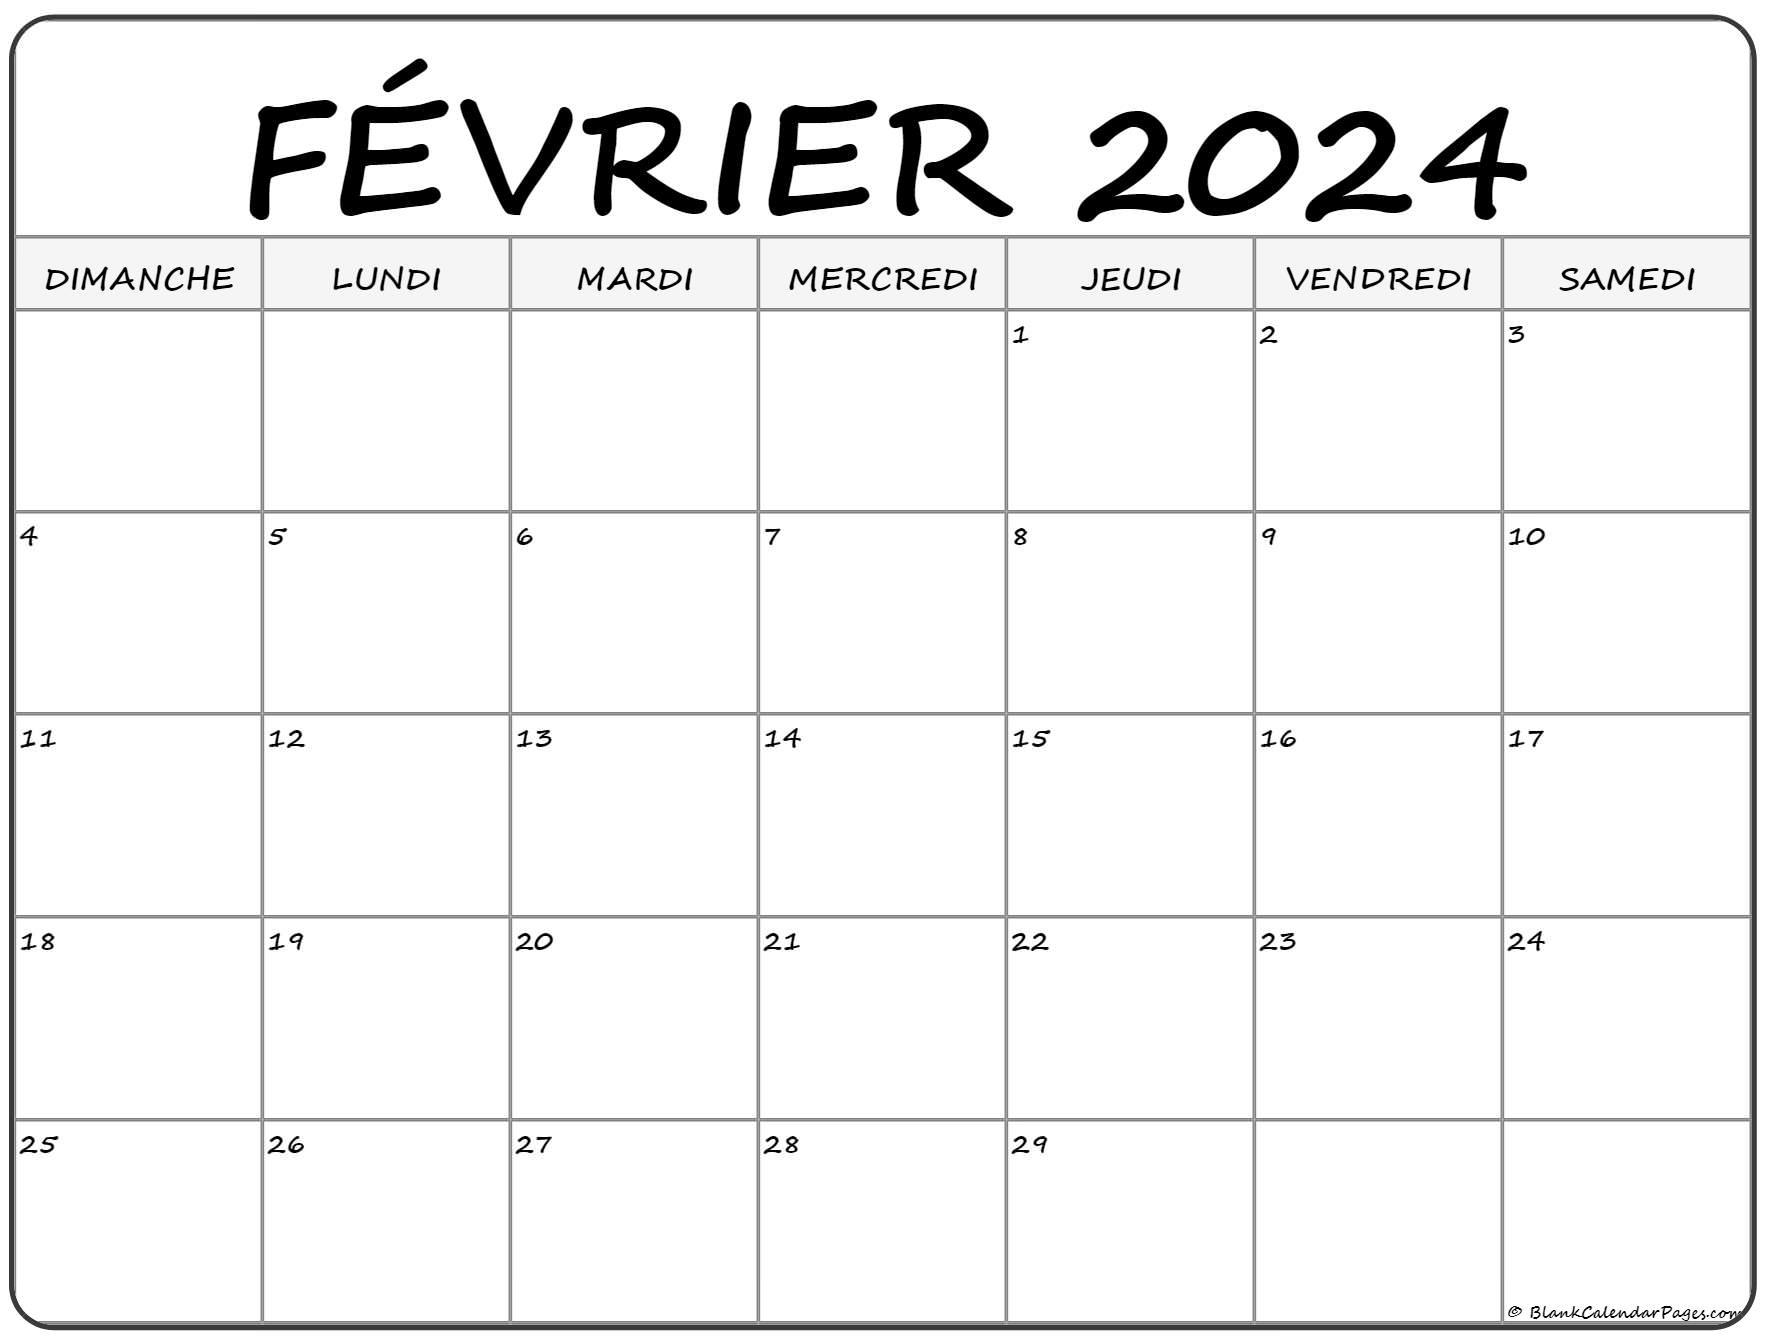 Calendrier Février Mars 2022 février 2022 calendrier imprimable | Calendrier gratuit